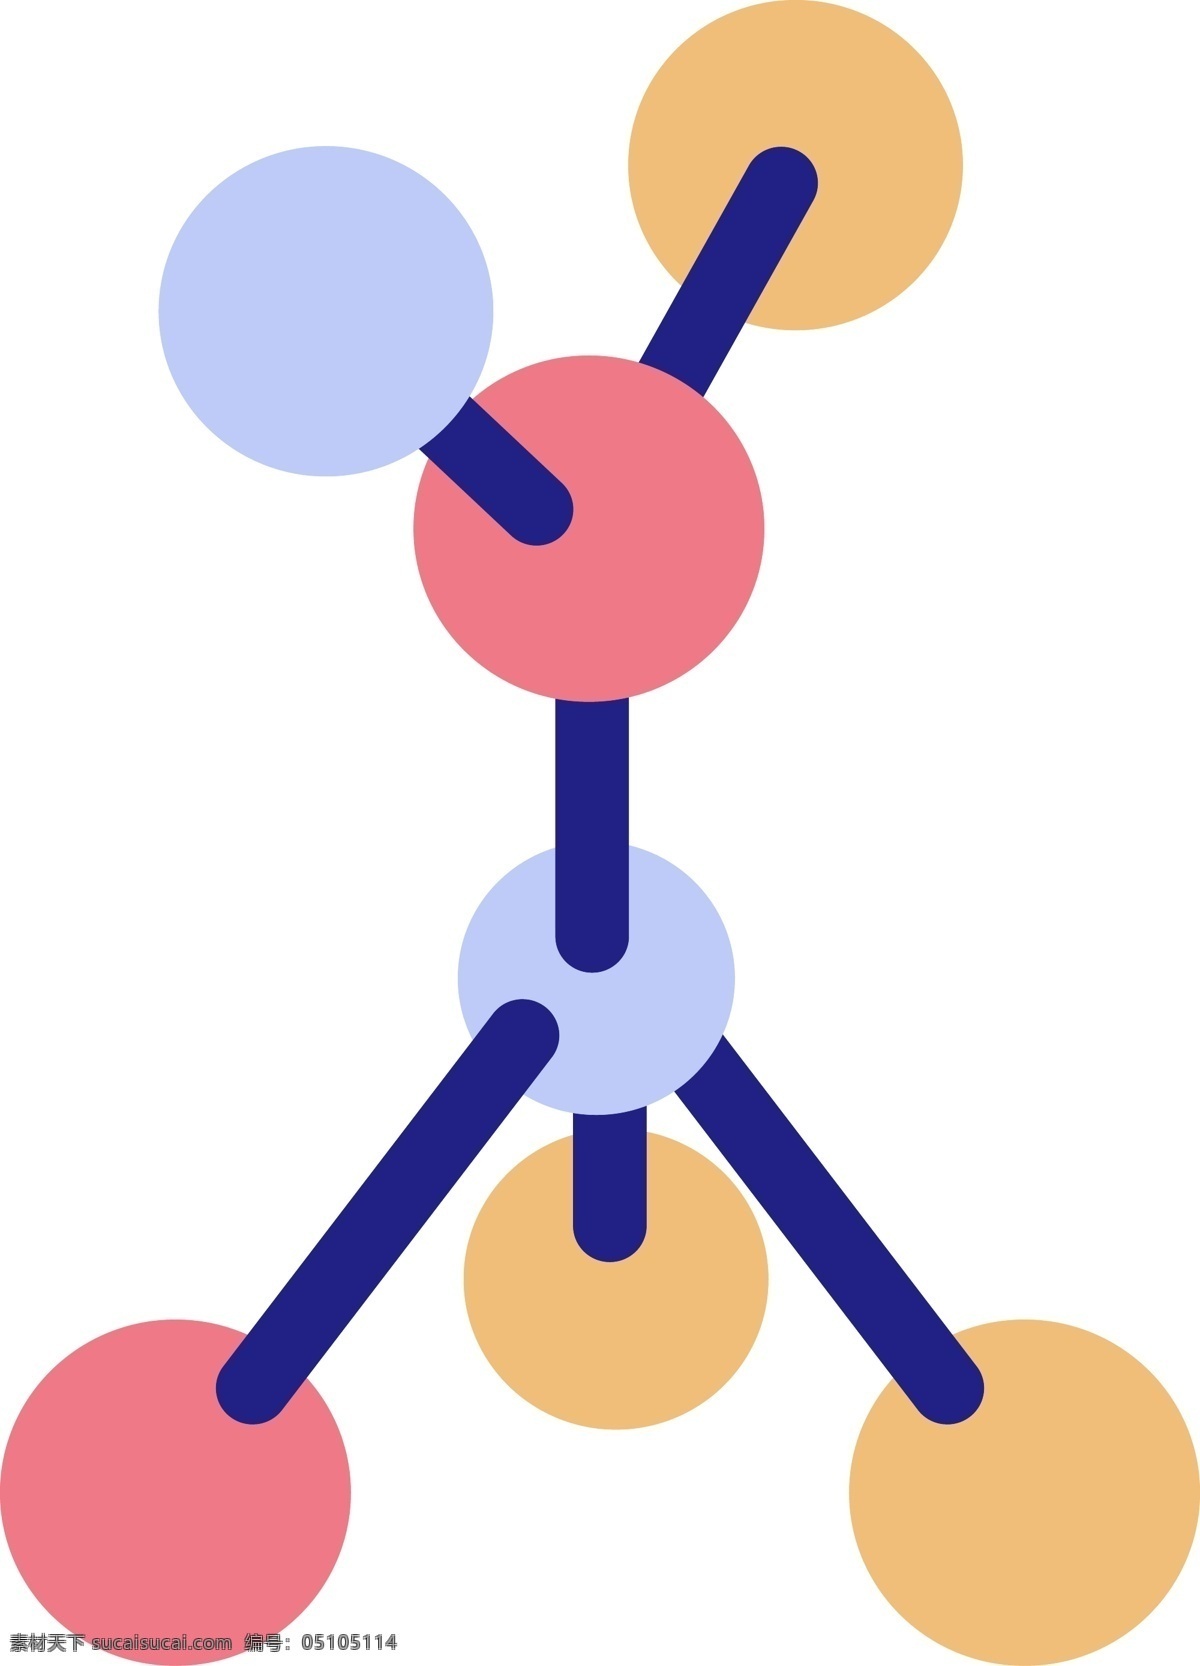 彩色 创意 基因 元素 圆球 数据 纹理 质感 卡通插画 光泽 圆弧 分析 组合 搭配